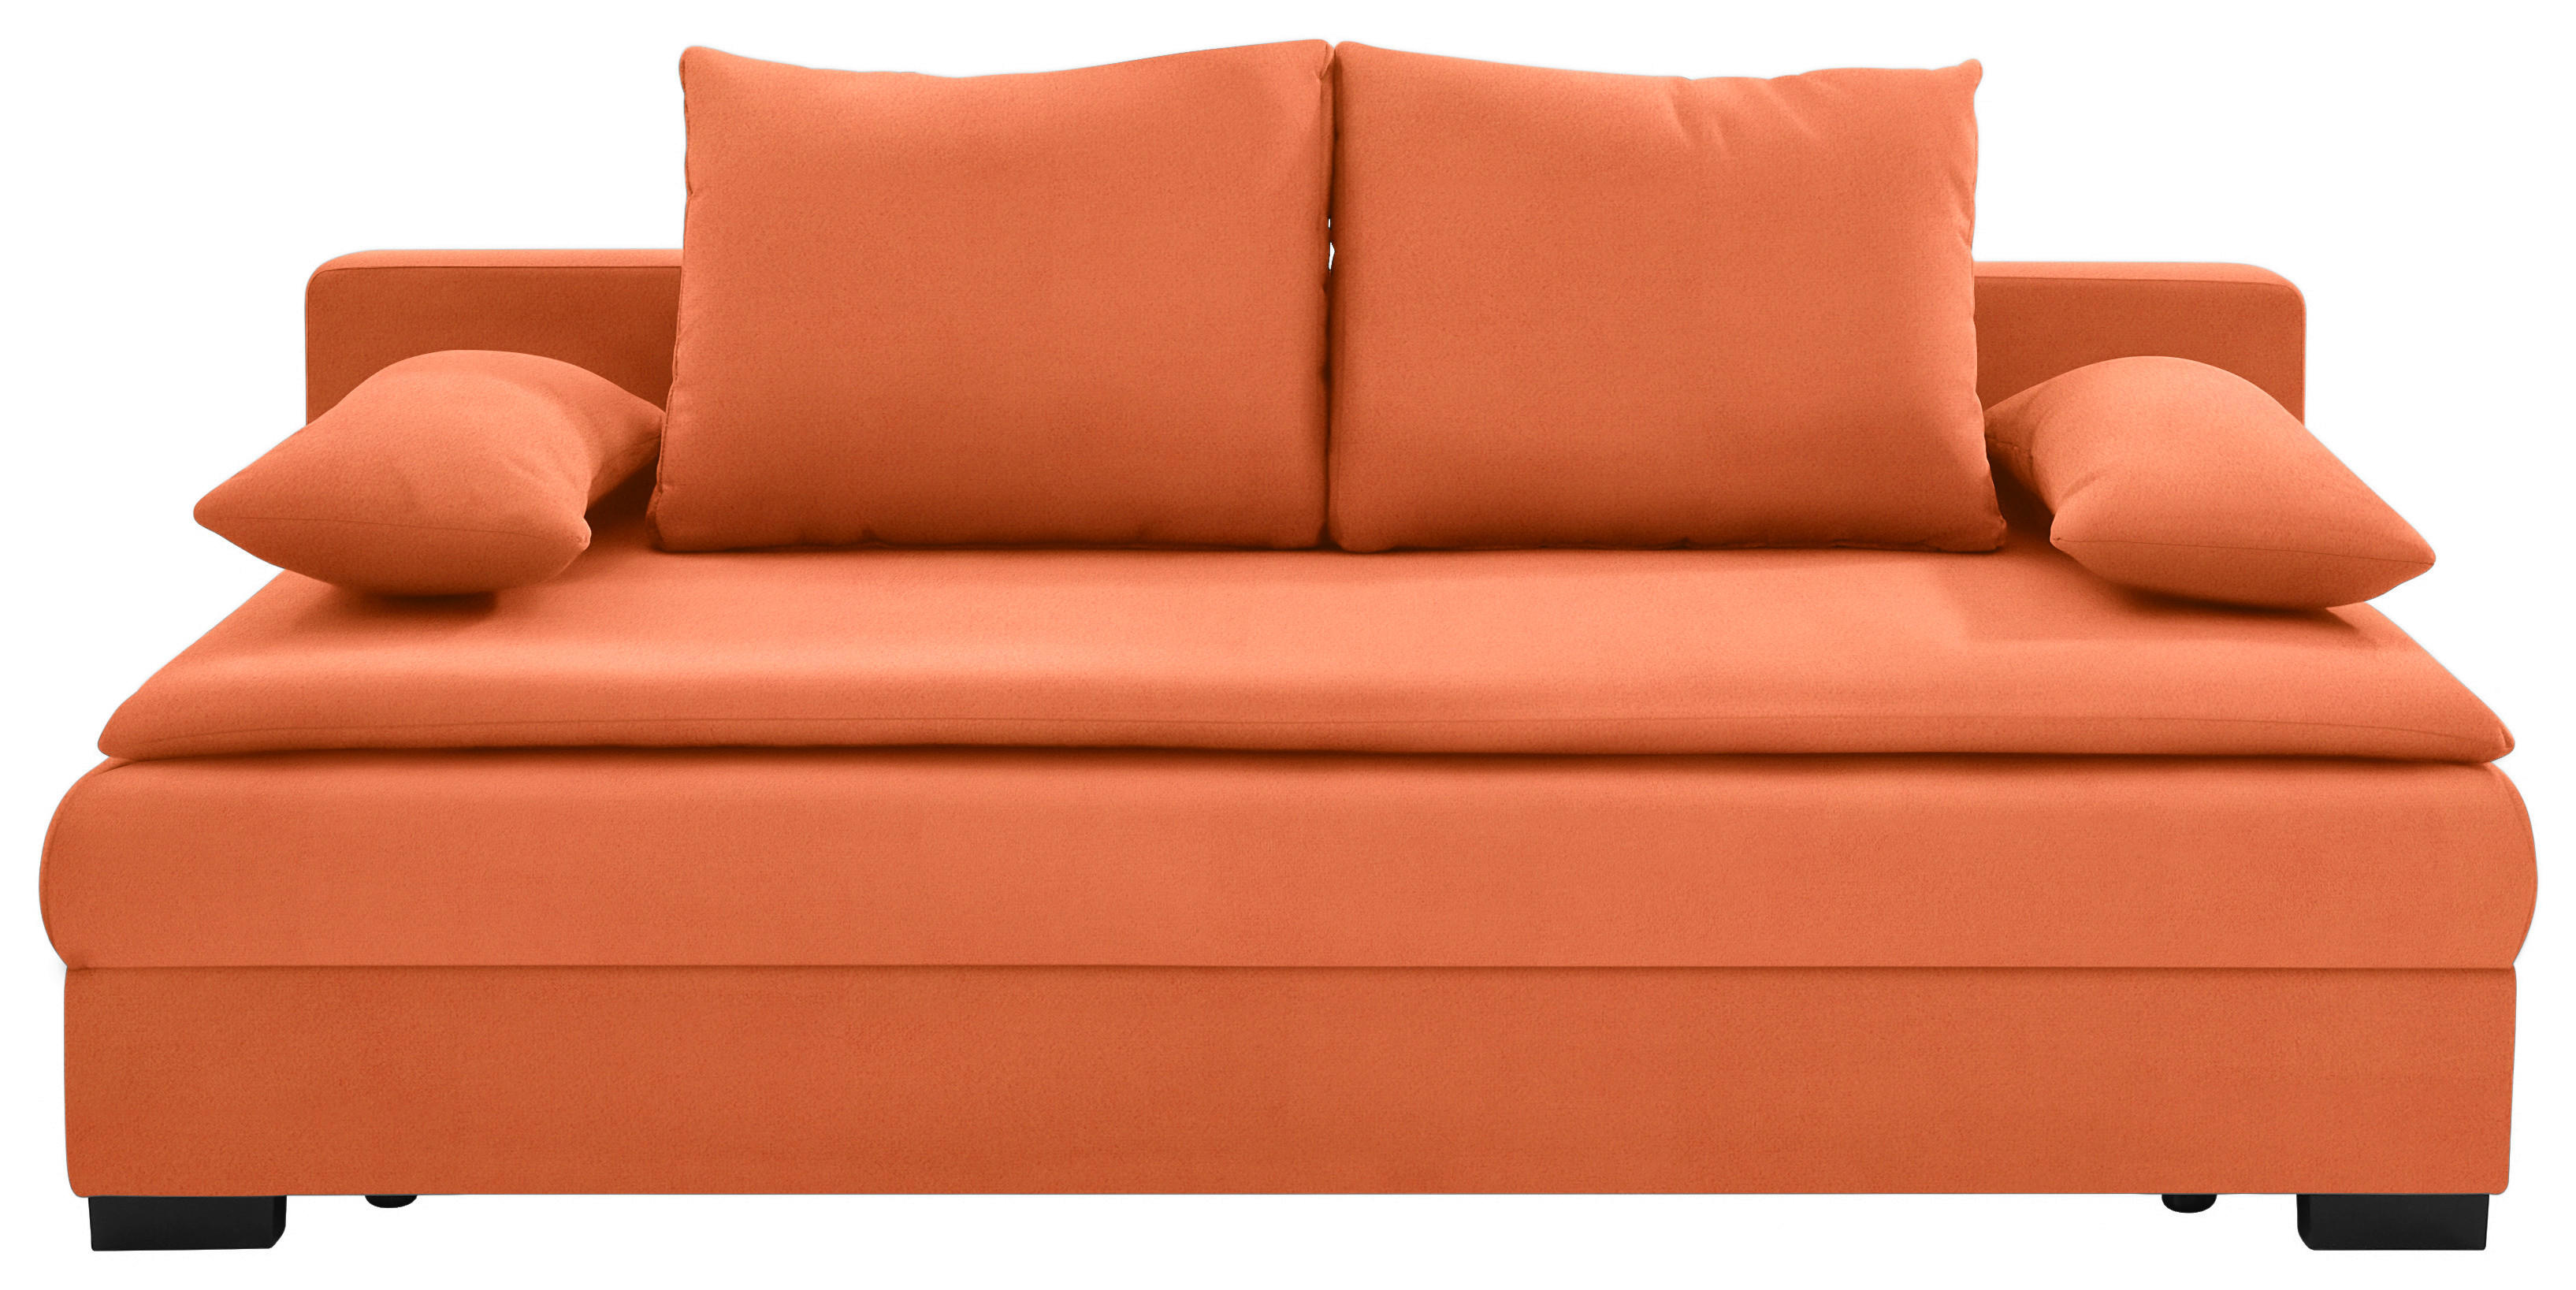 KANAPÉÁGY Textil Narancs  - Narancs/Fekete, Konventionell, Műanyag/Textil (207/94cm) - Venda